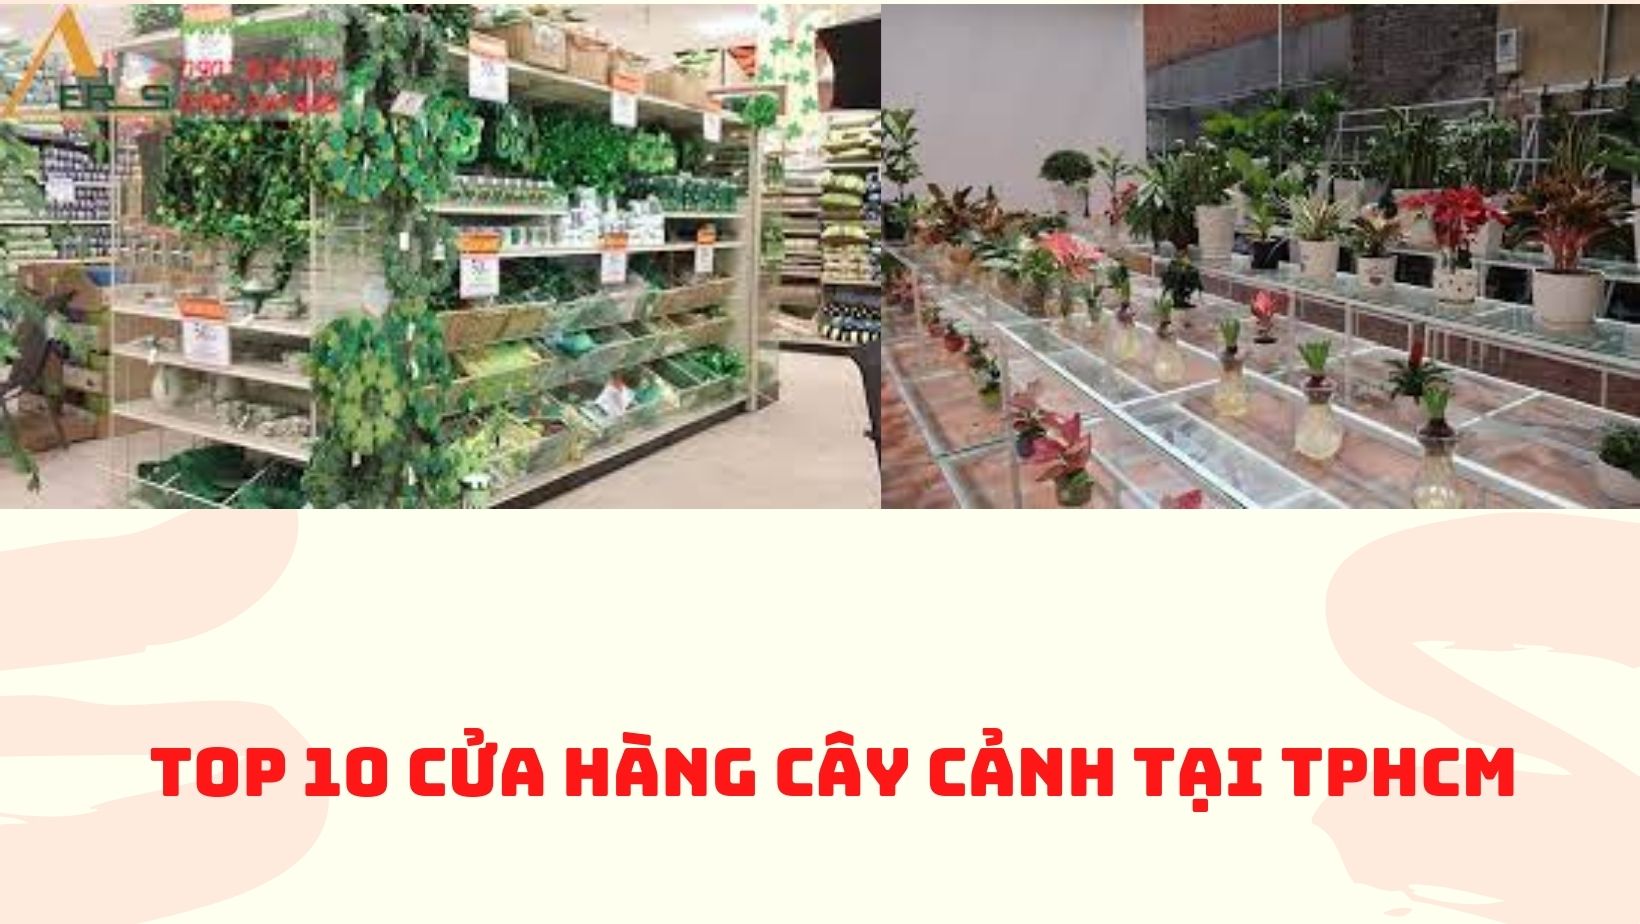 Top 10 cửa hàng cây cảnh tại TPHCM - Top10hcm.vn